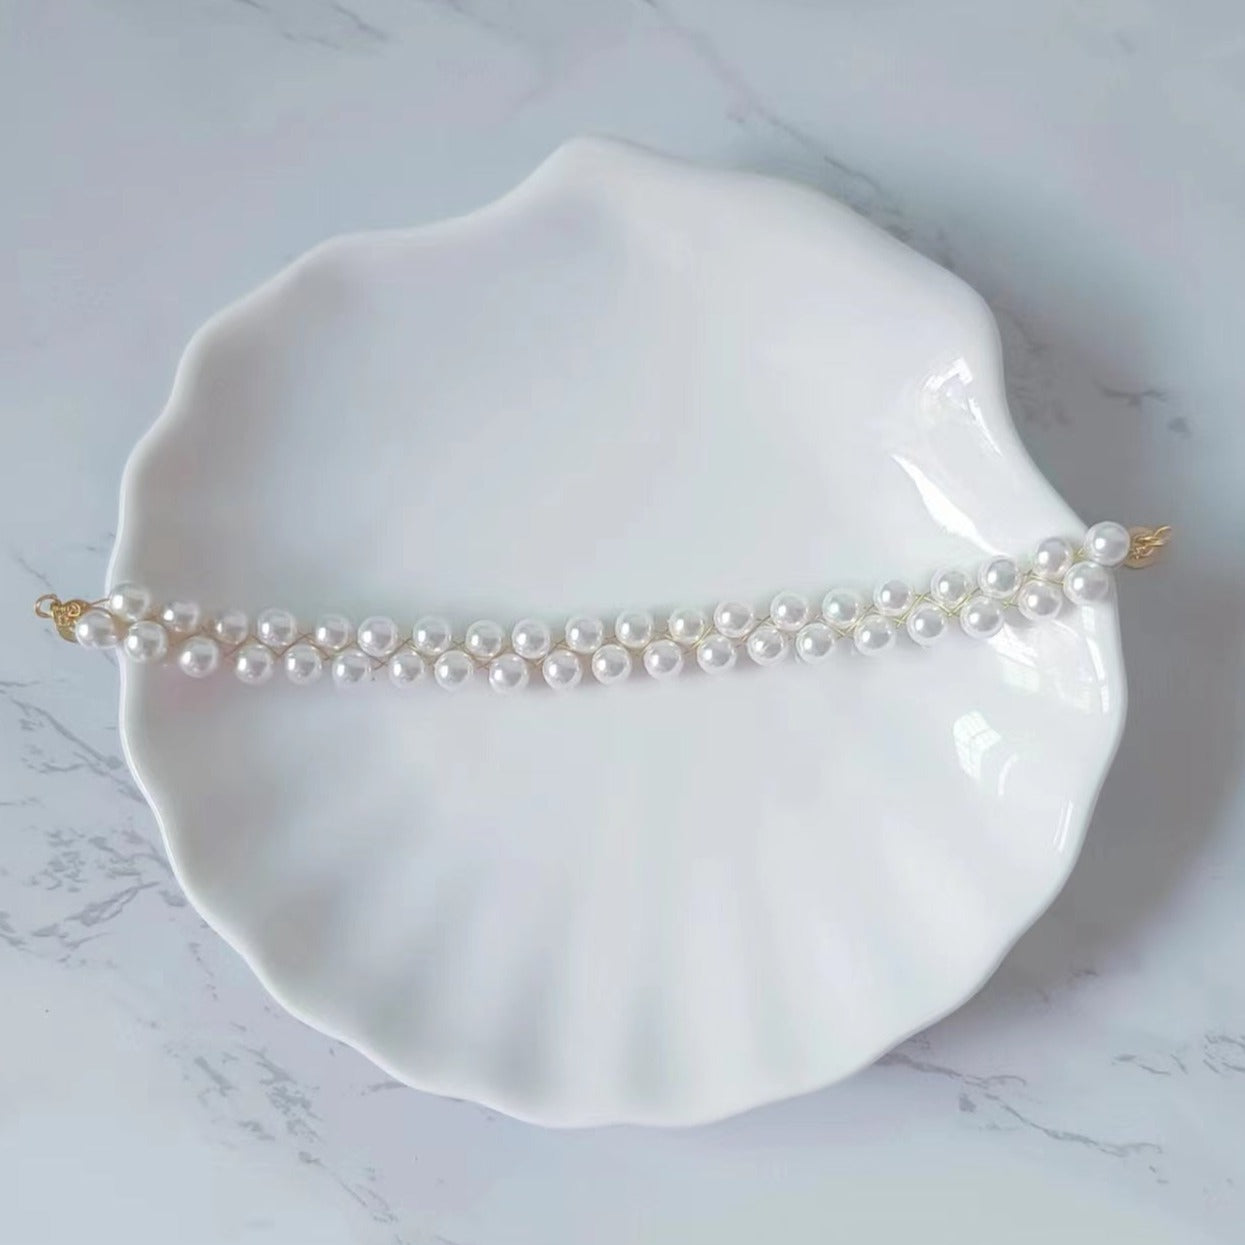 Woven Pearl Bracelet